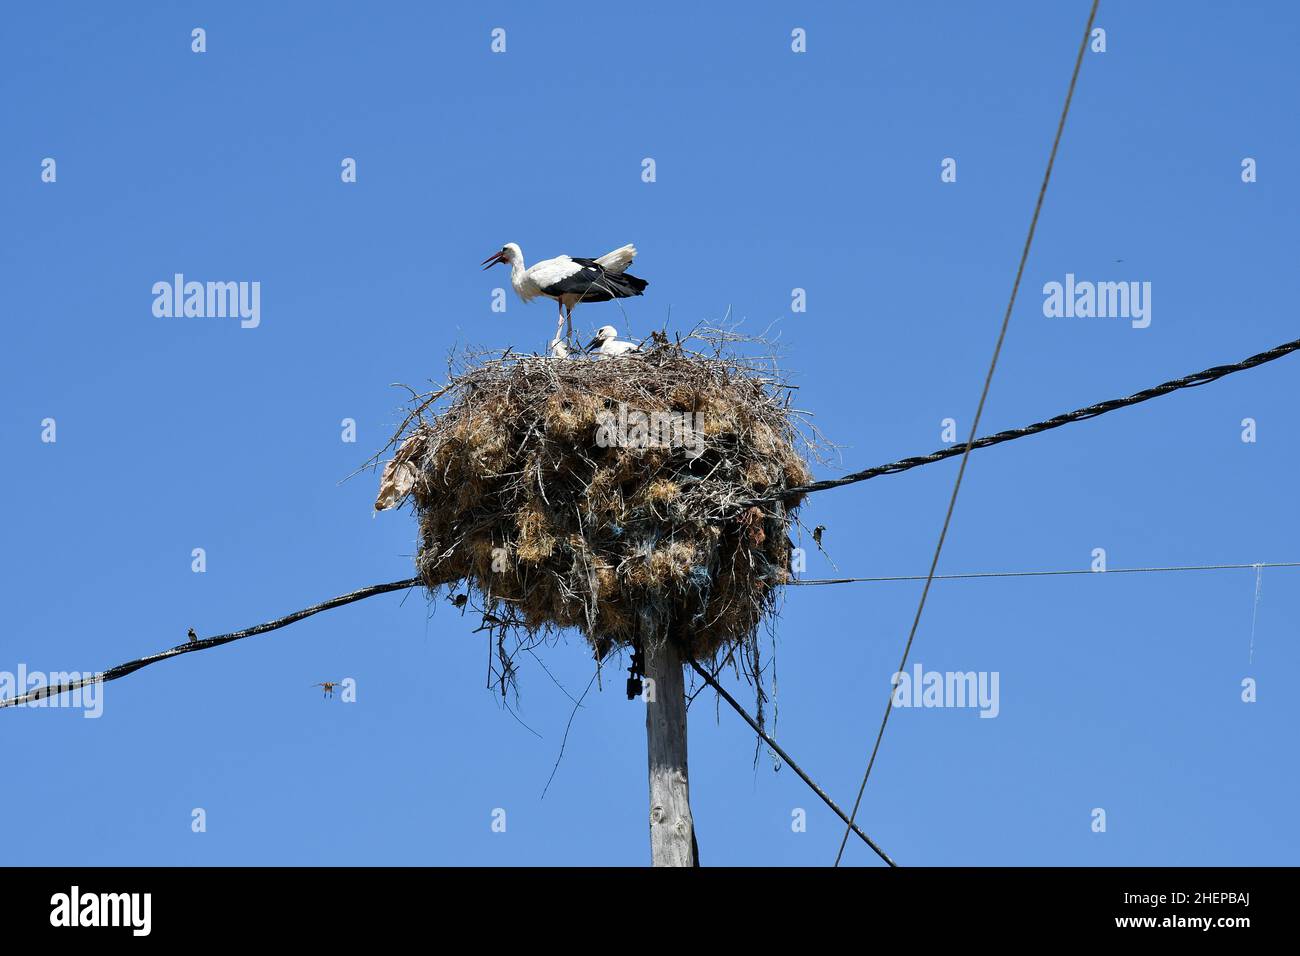 Grecia, la cigüeña anida con las aves jóvenes en el poste de la energía de madera Foto de stock